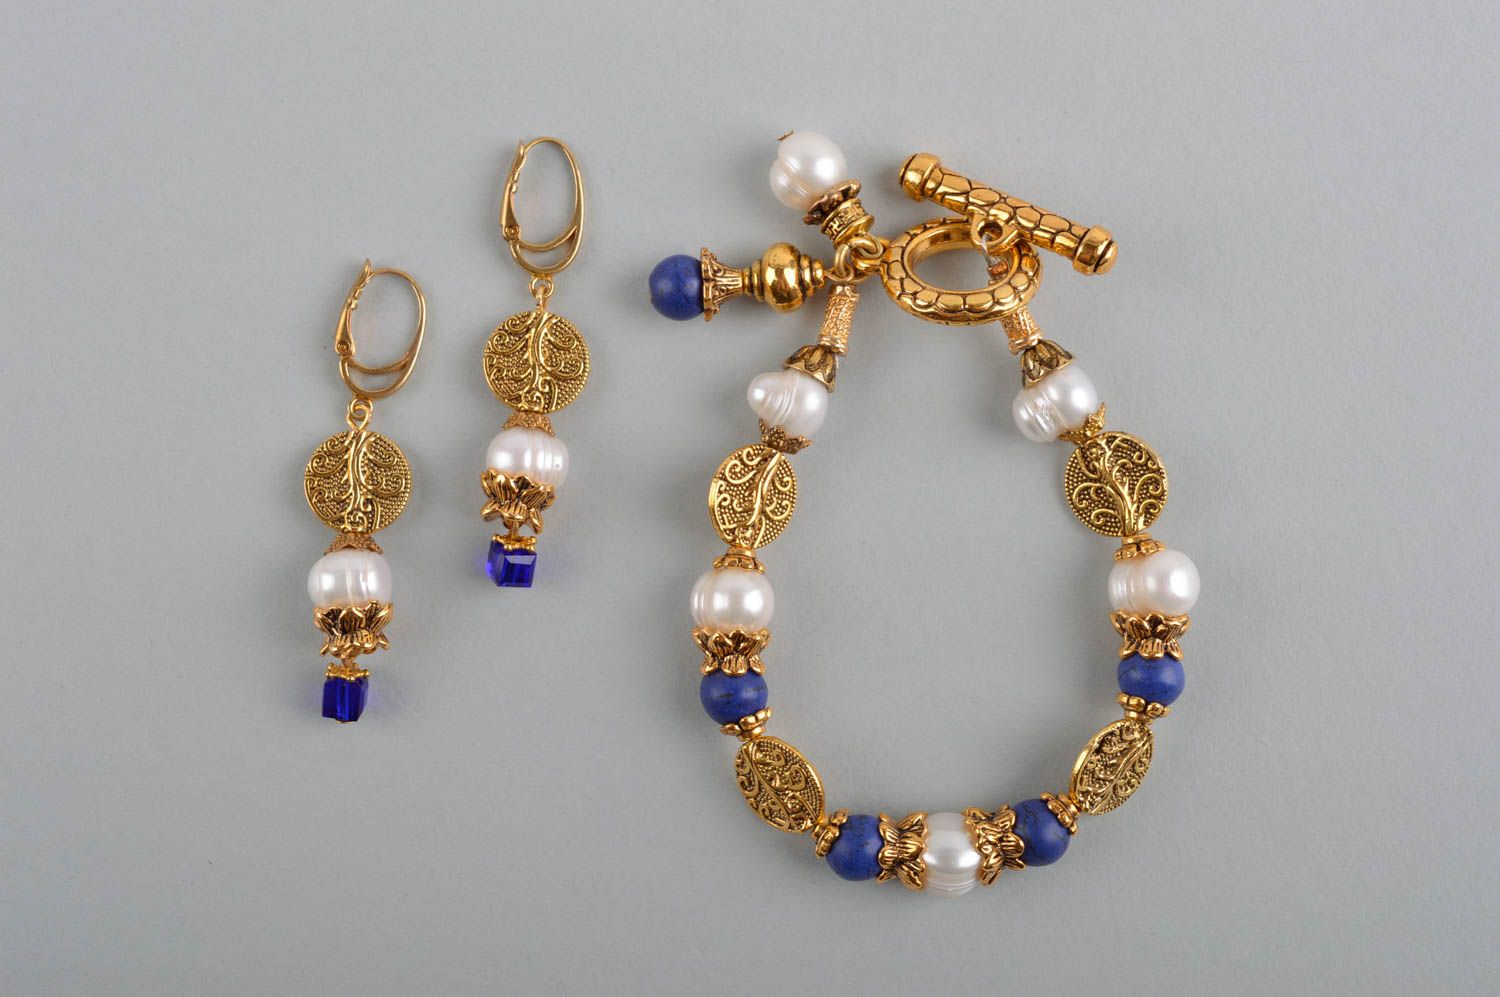 Handmade jewelry set gemstone earrings wrist bracelet bead jewelry stone jewelry photo 2